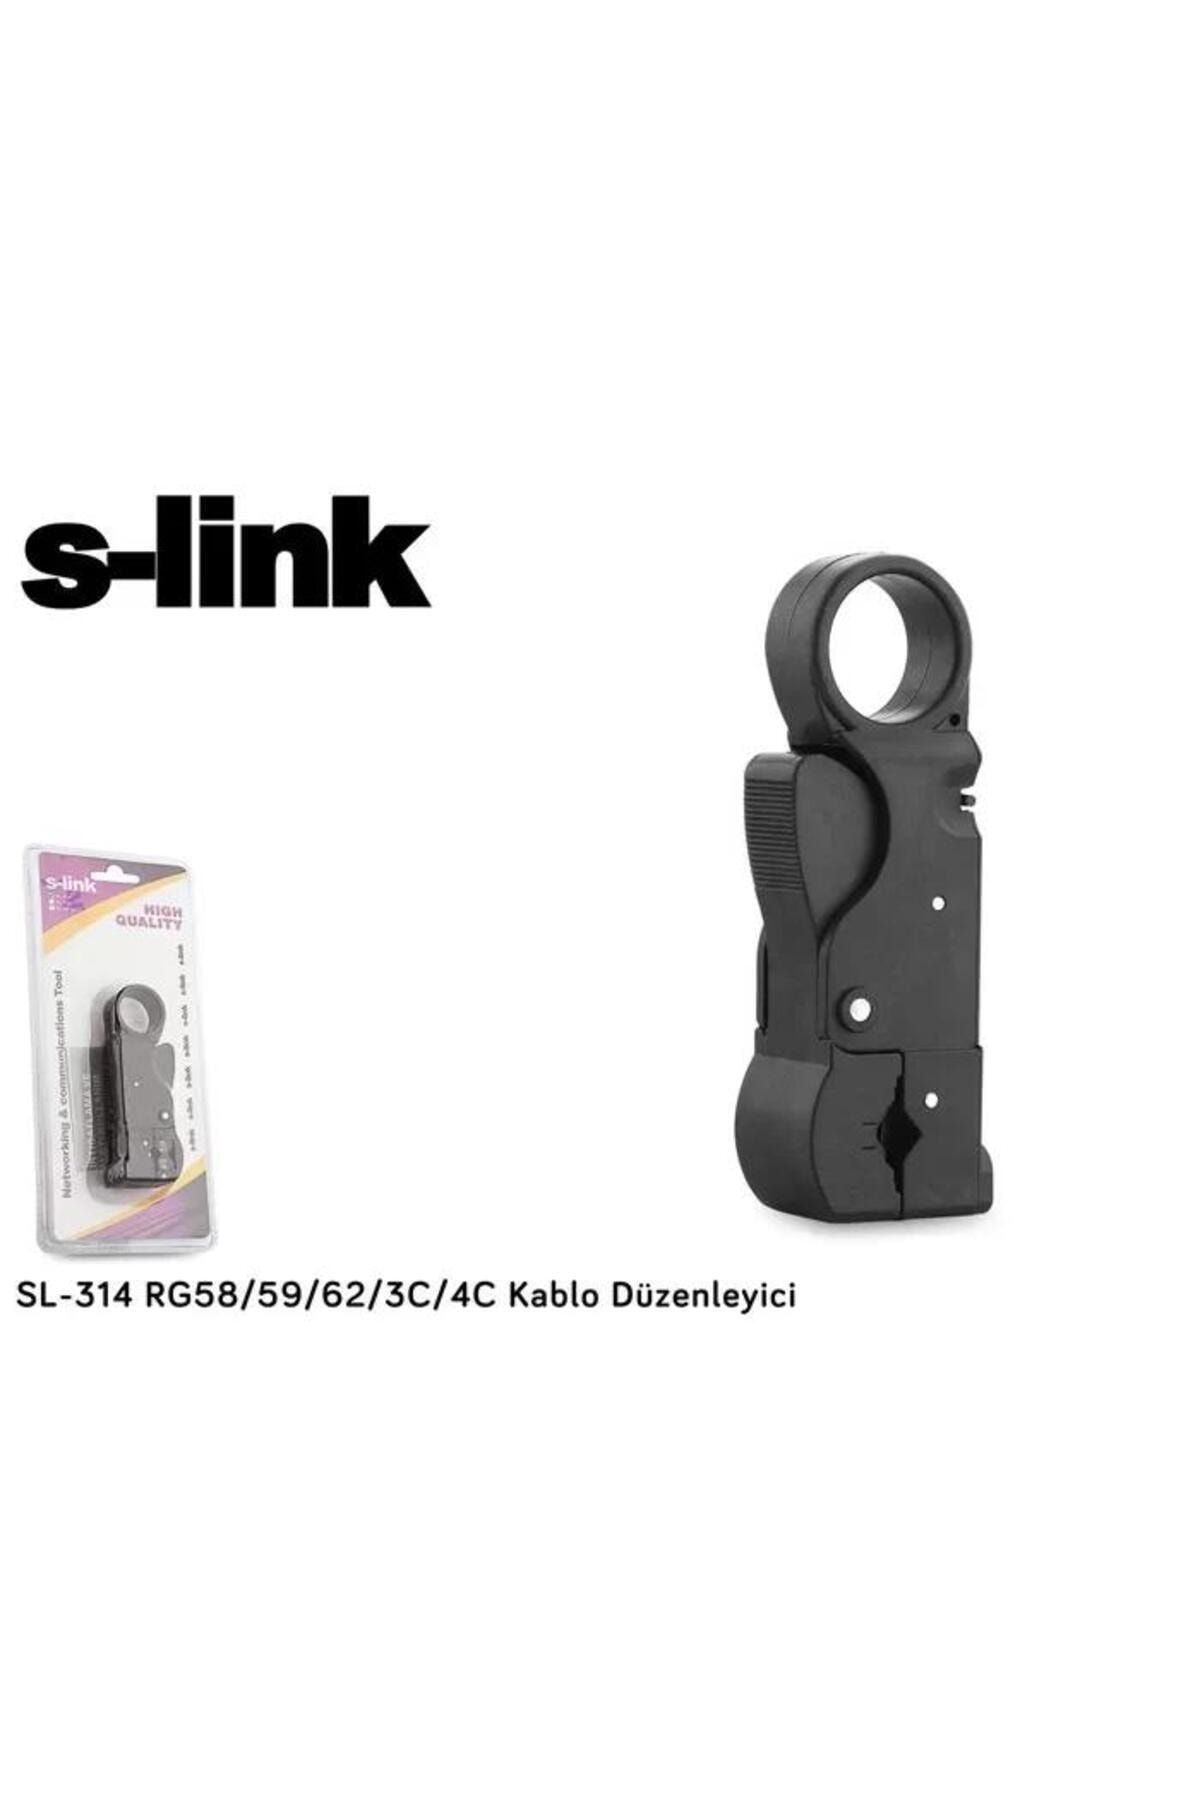 S-Link S Link Sl 314 Rg58 59 62 3C 4C Kablo Ucu Soyucu / S Link